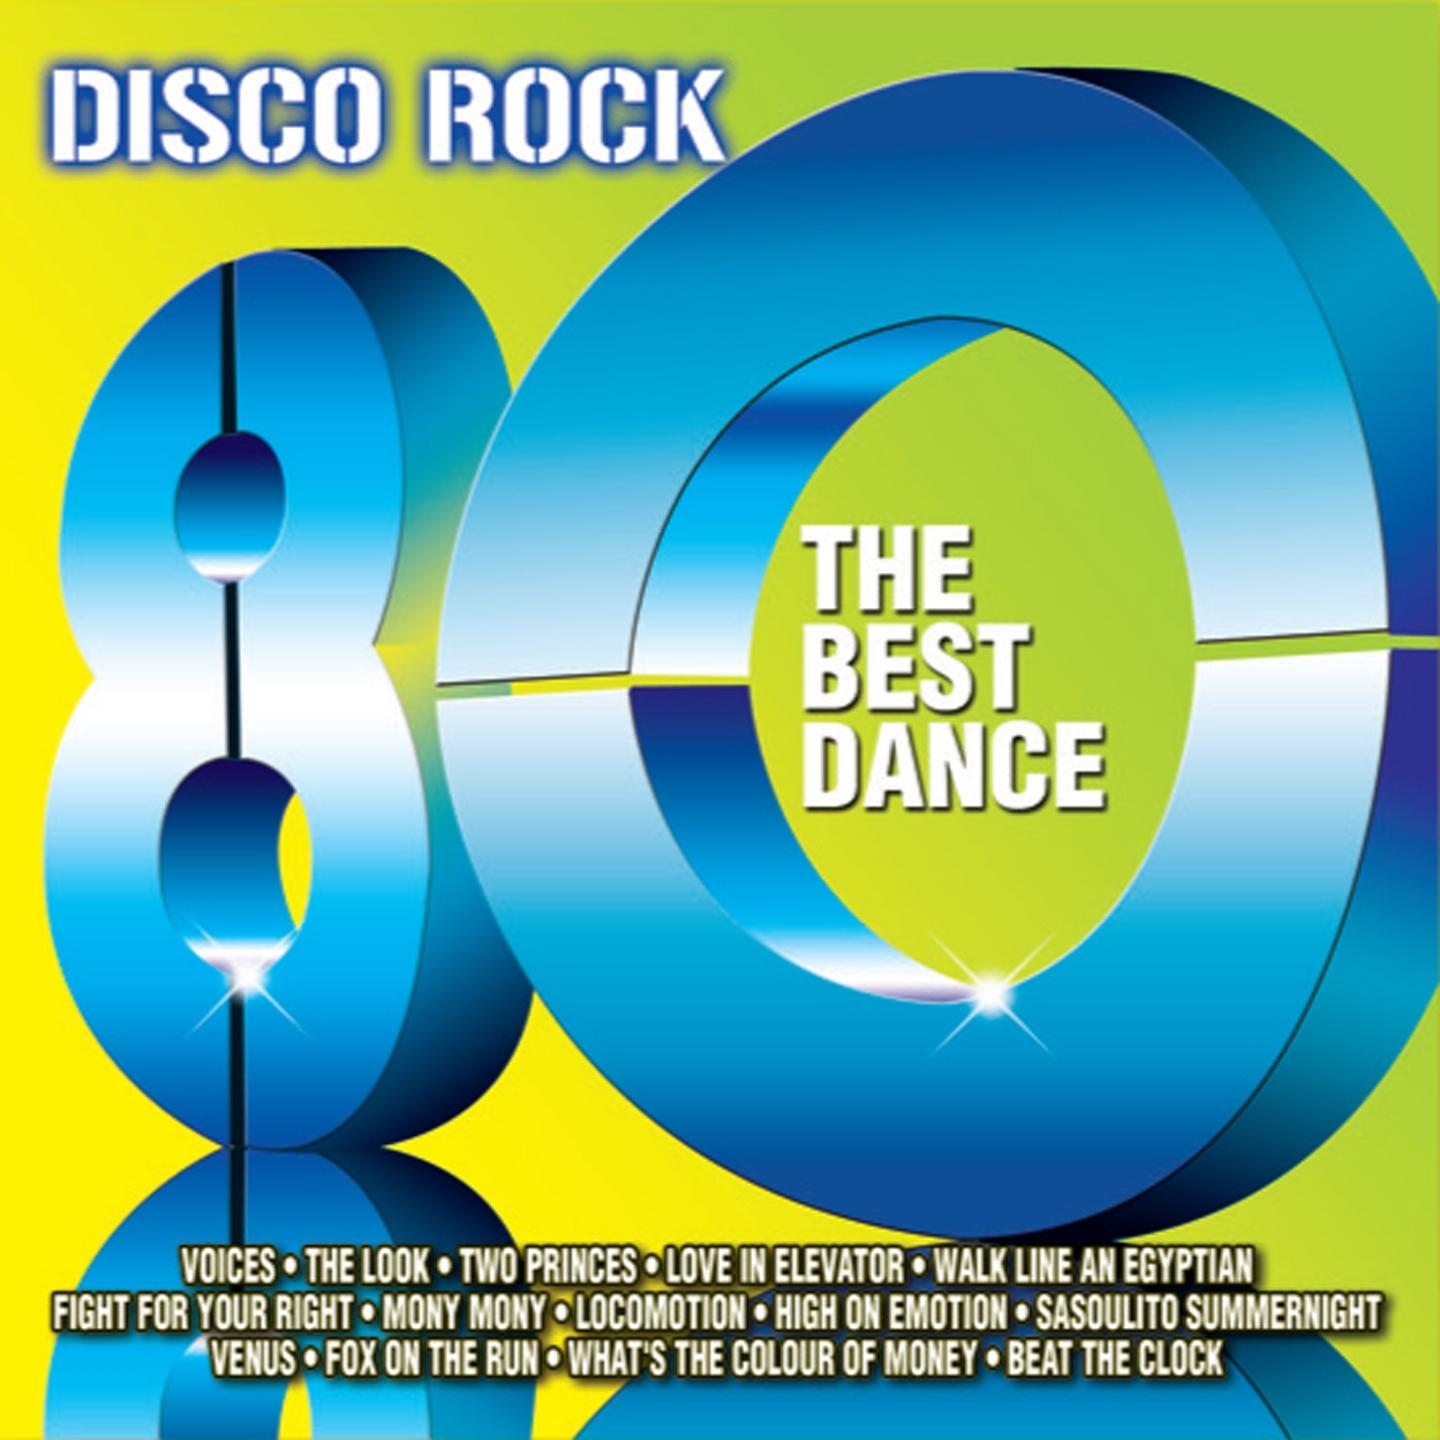 Disco Rock 80 (The Best Dance)